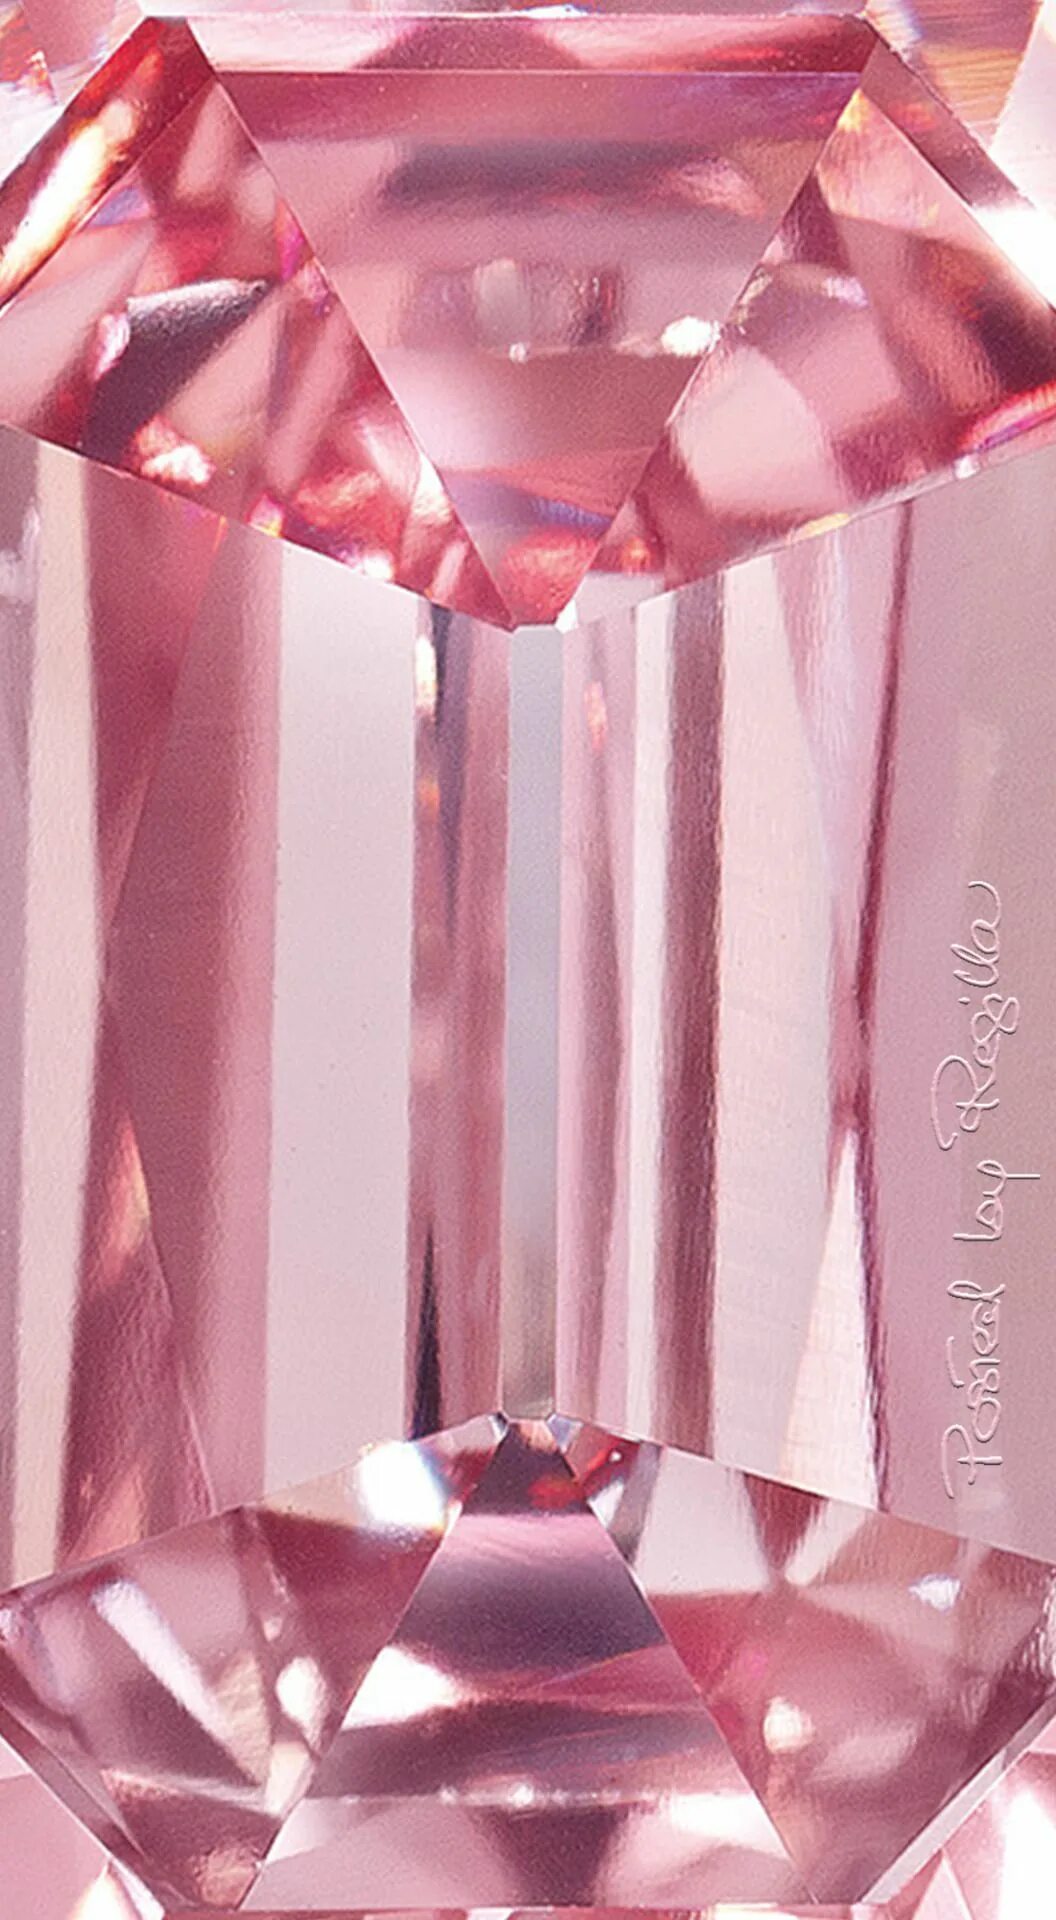 Montage diamante rosa. Розовый диамонд бриллианты. Розовый камень драгоценный Алмаз.